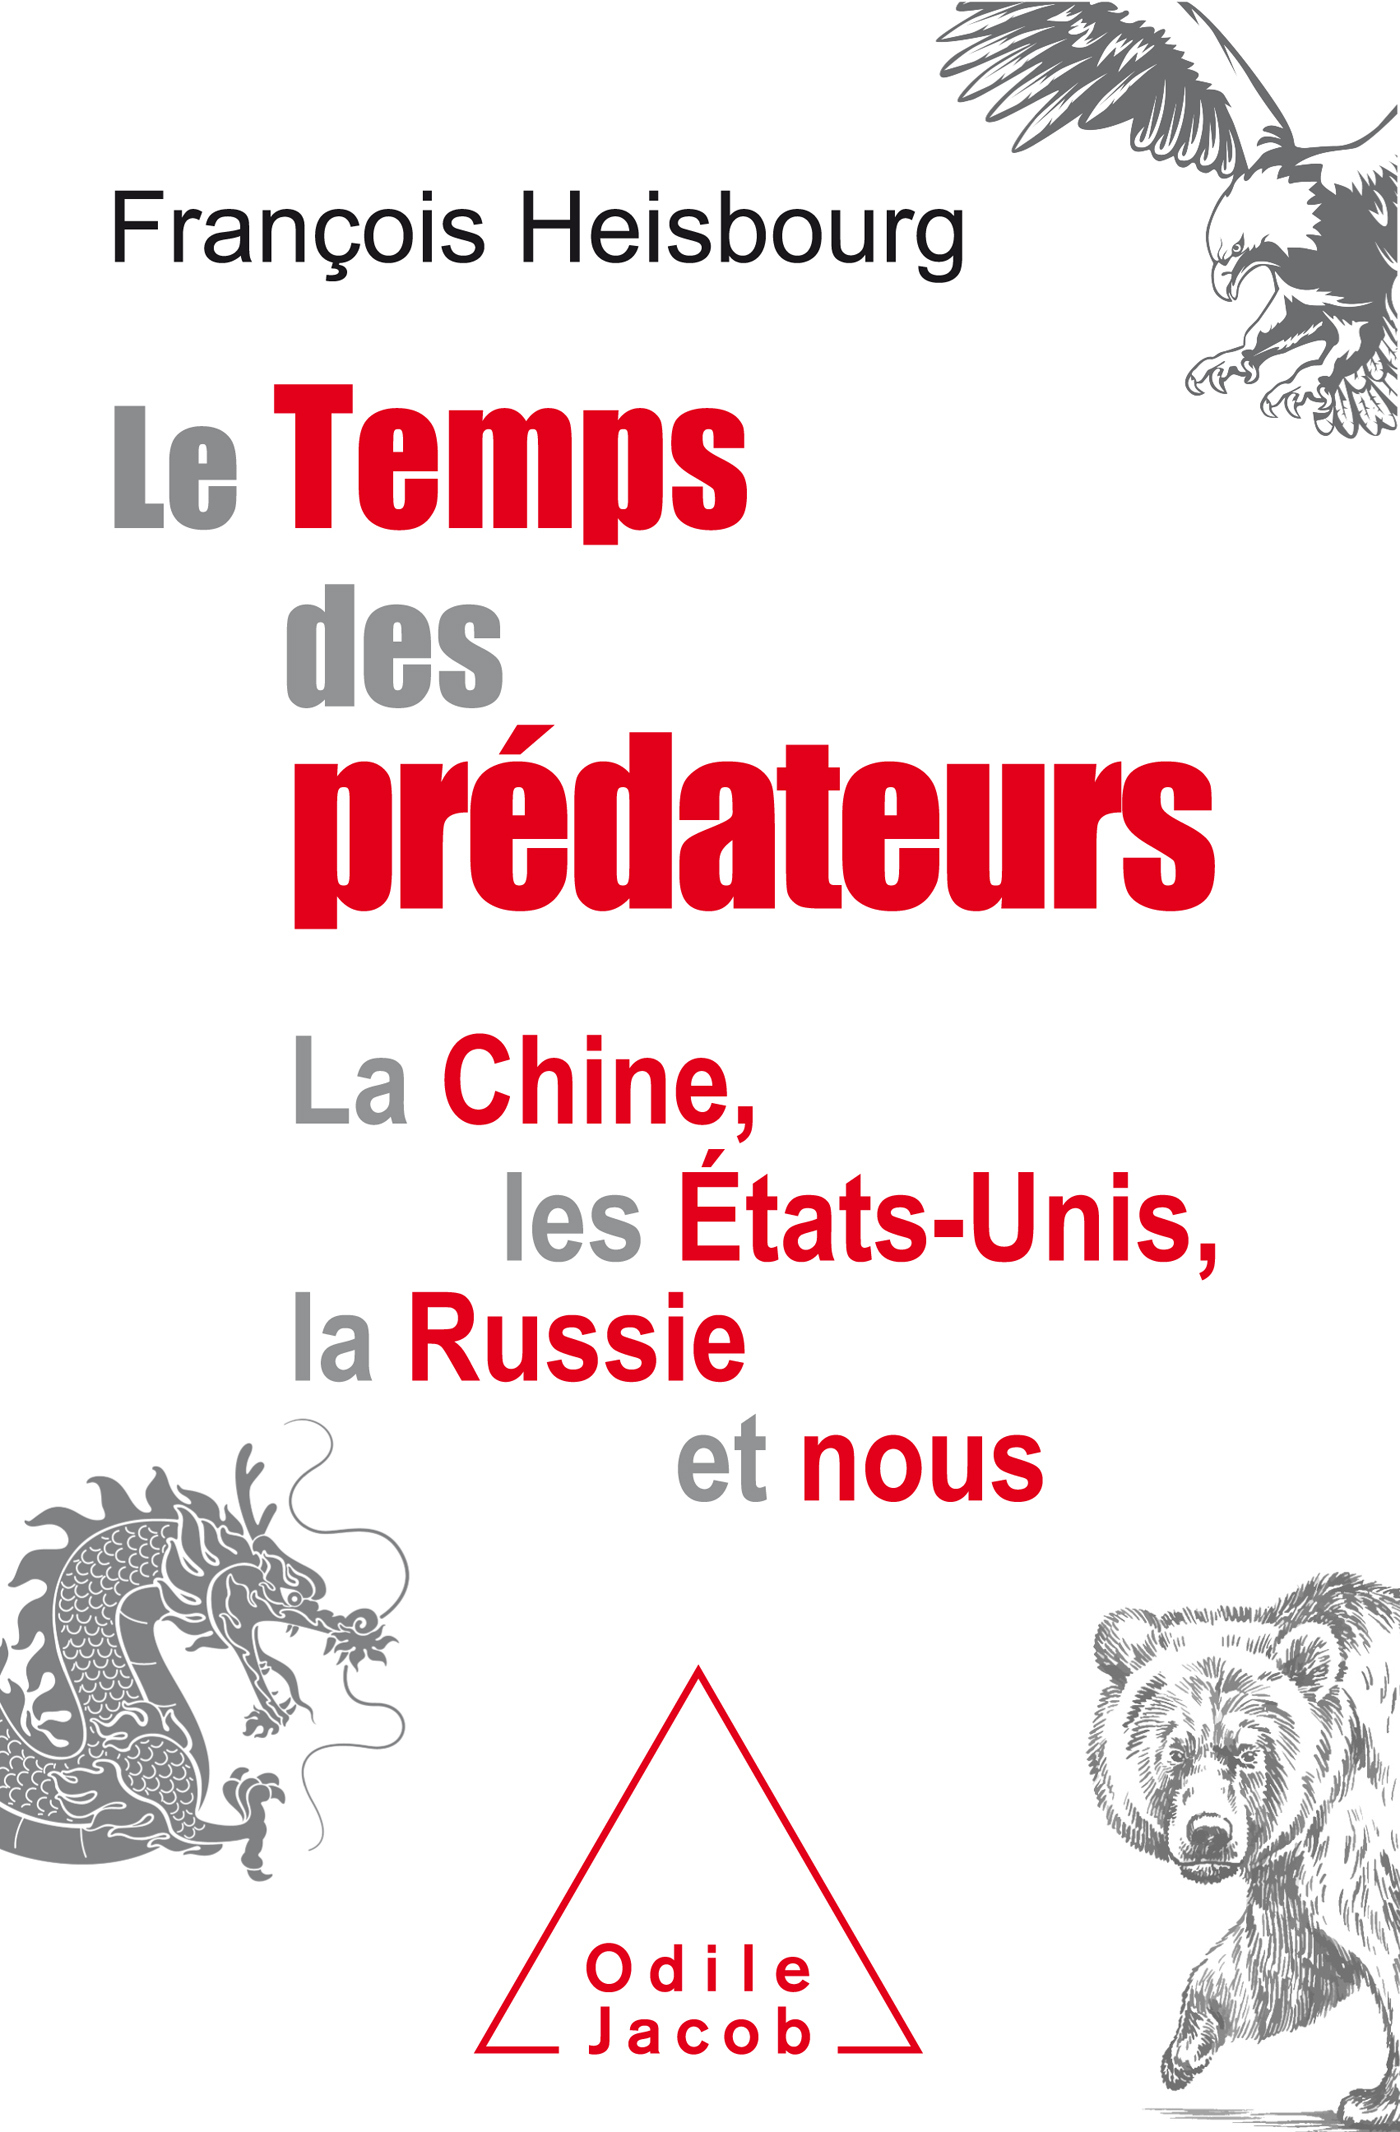 Le temps des prédateurs la Chine, les Etats-Unis, la Russie et nous de François Heisbourg sort en librairie.